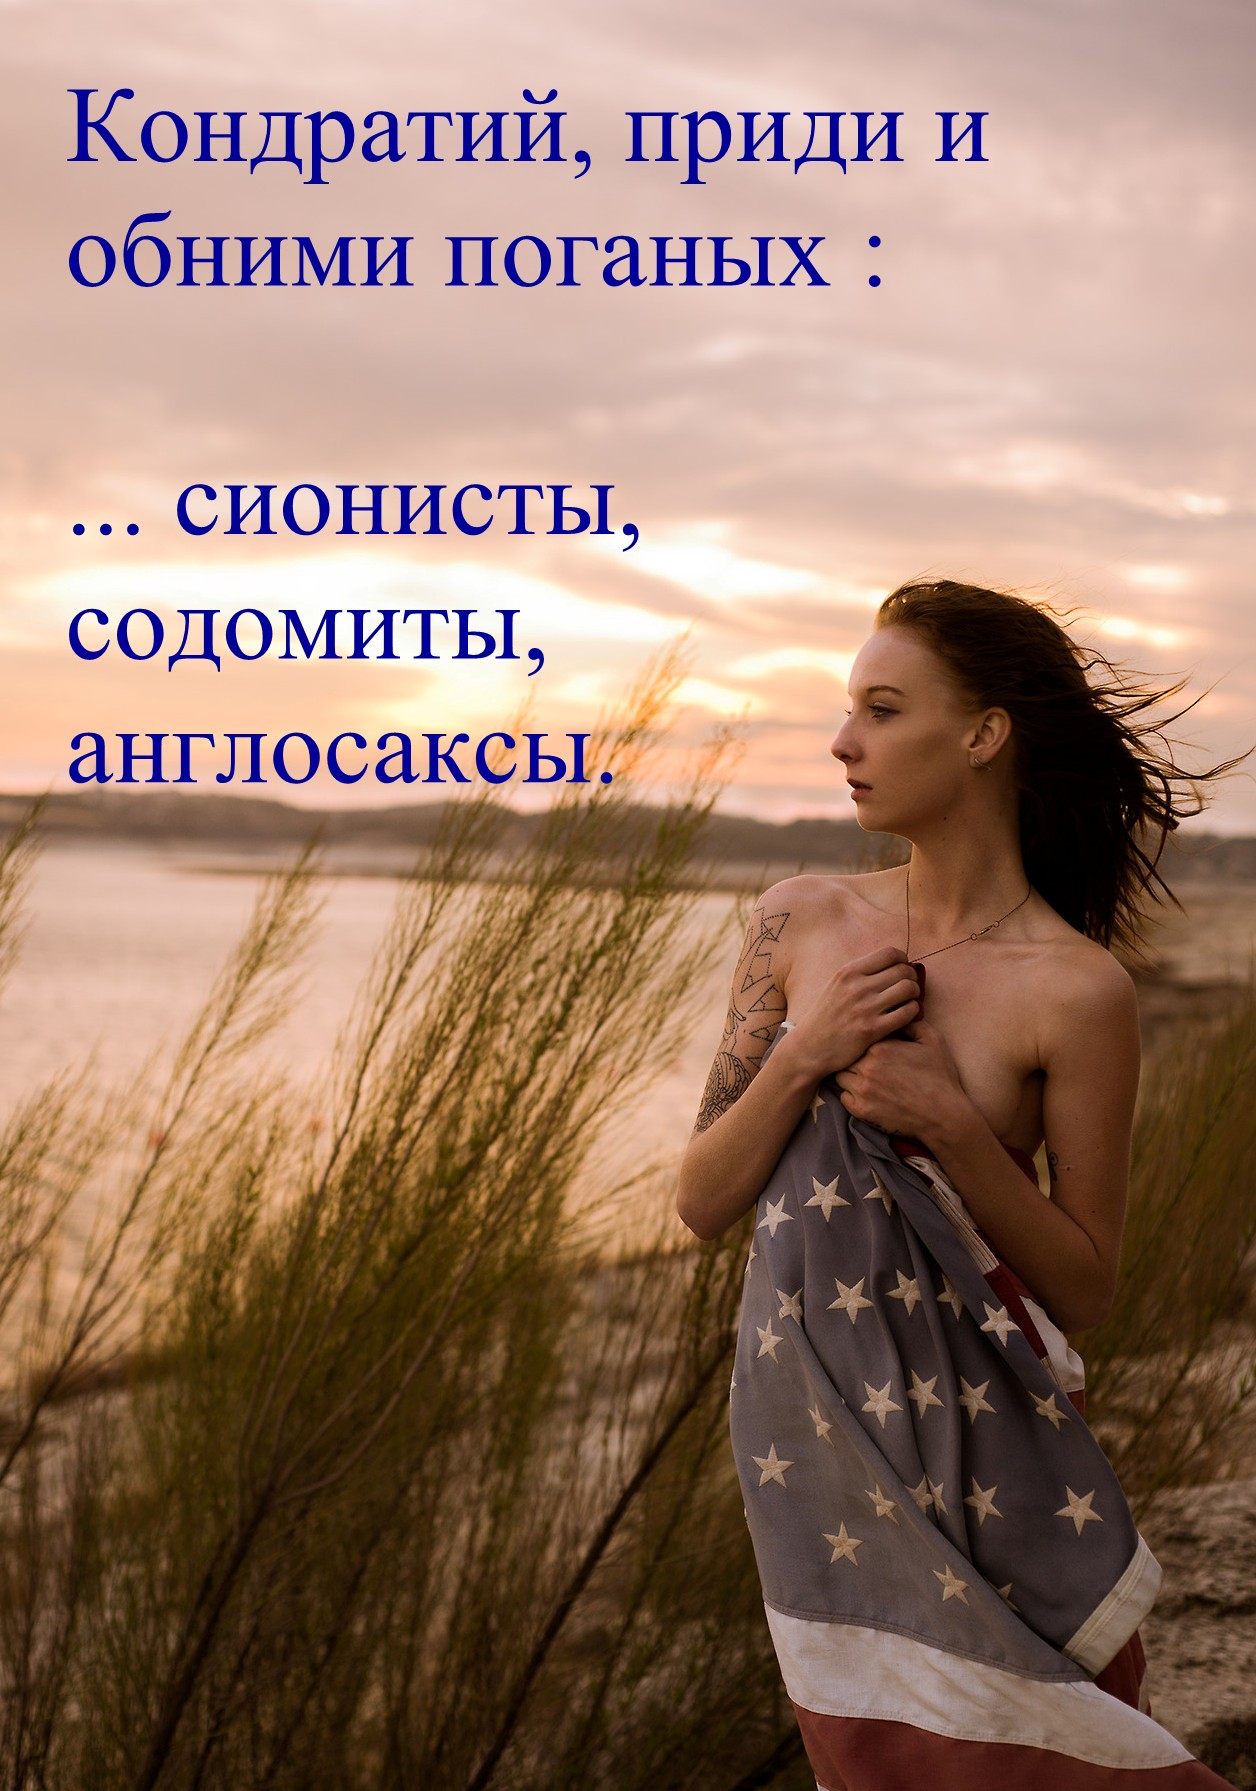 http://i67.fastpic.ru/big/2014/0717/3e/675f15afe556b4fd68507993b8d8873e.jpg